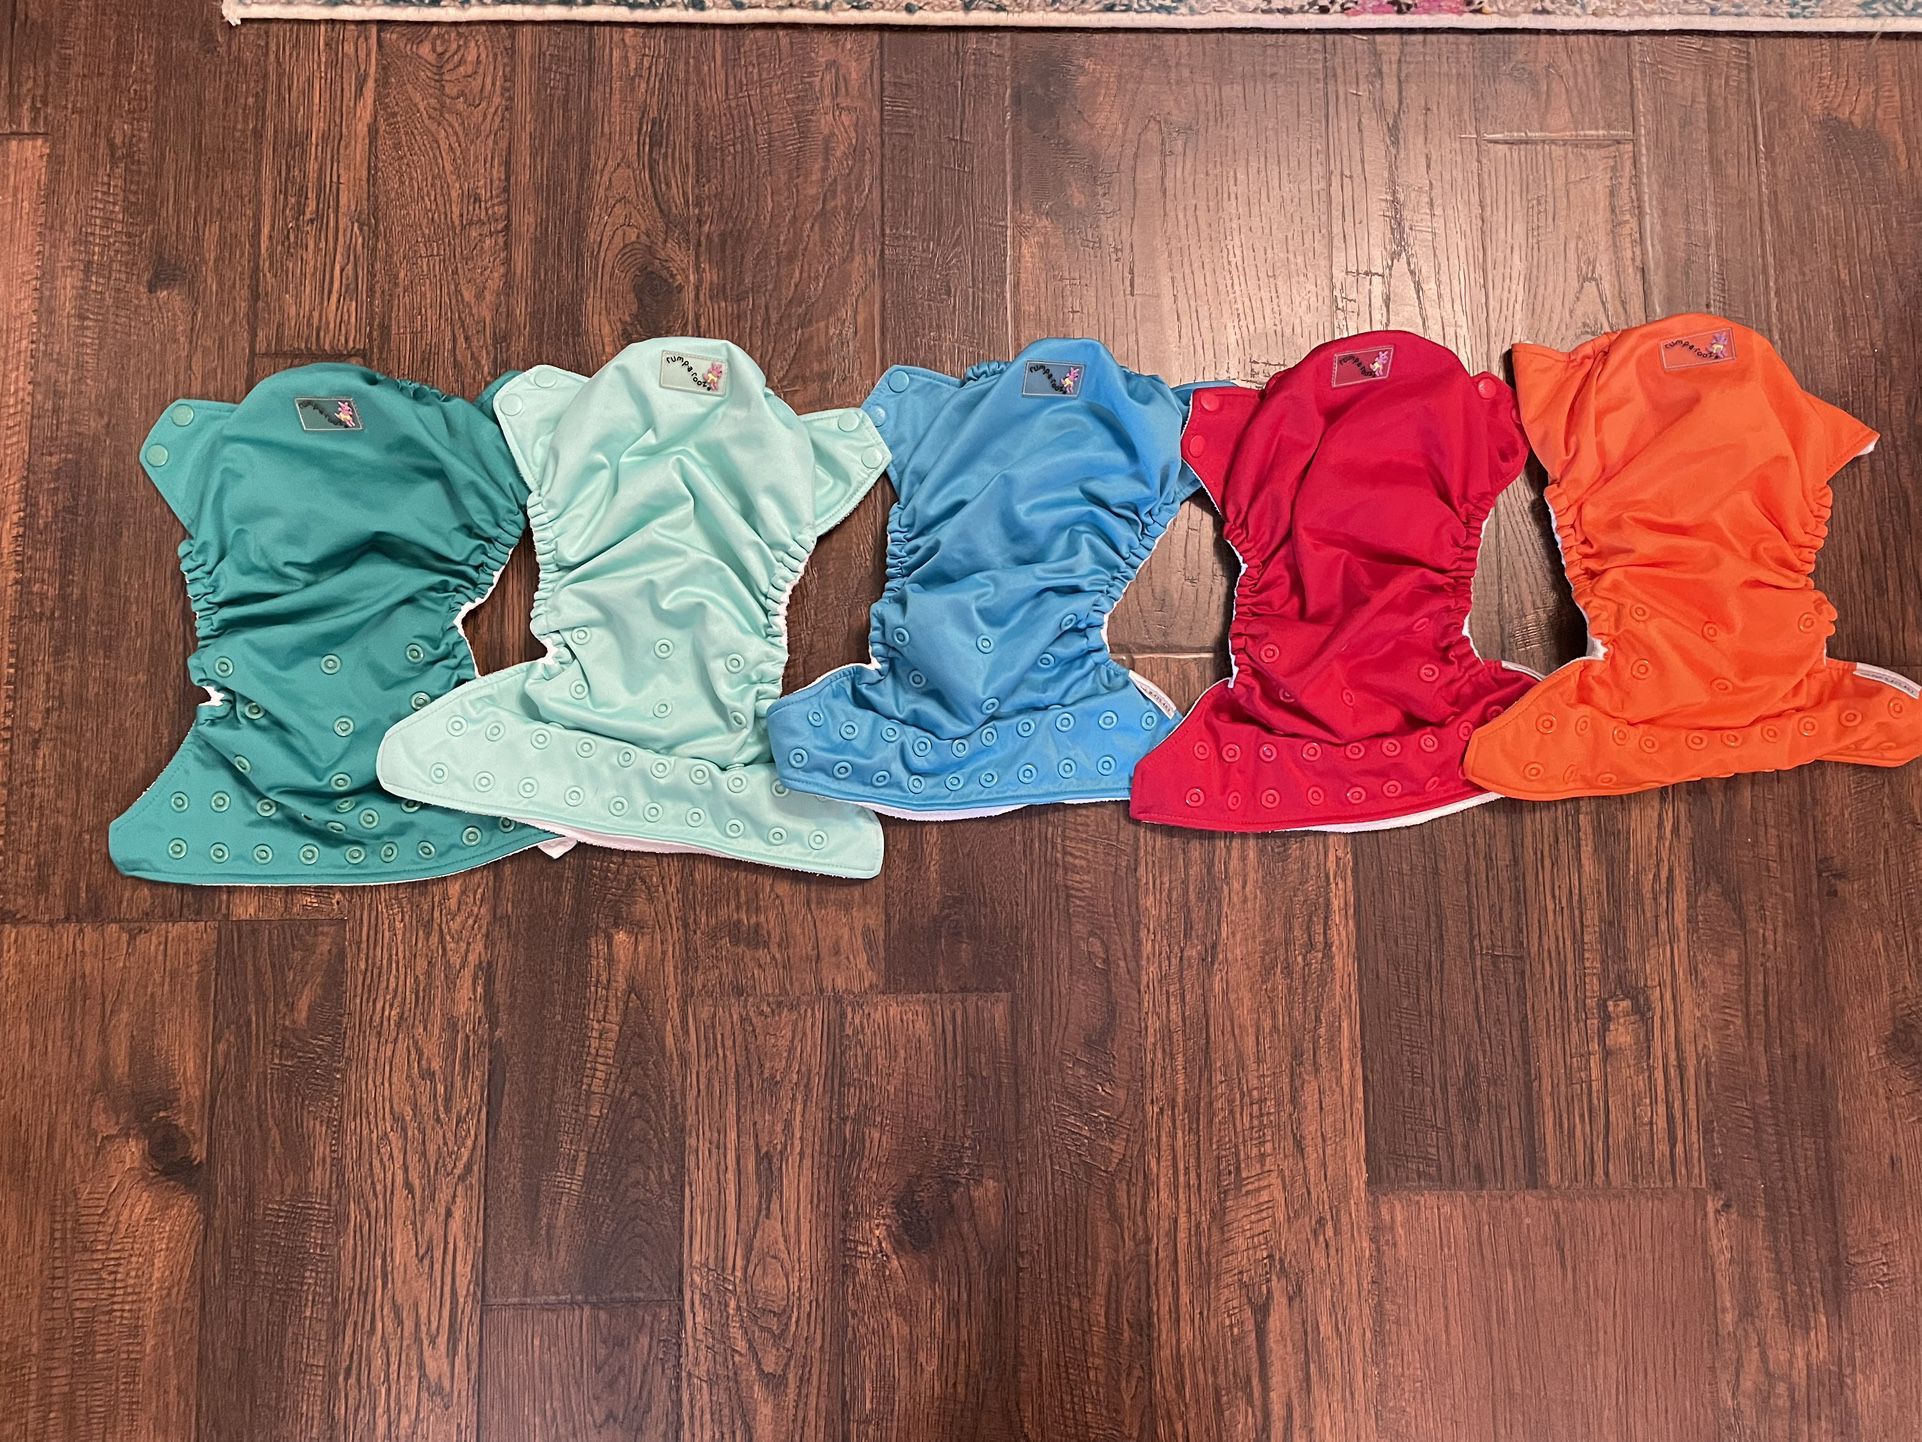 27 Kanga Care Cloth Diapers